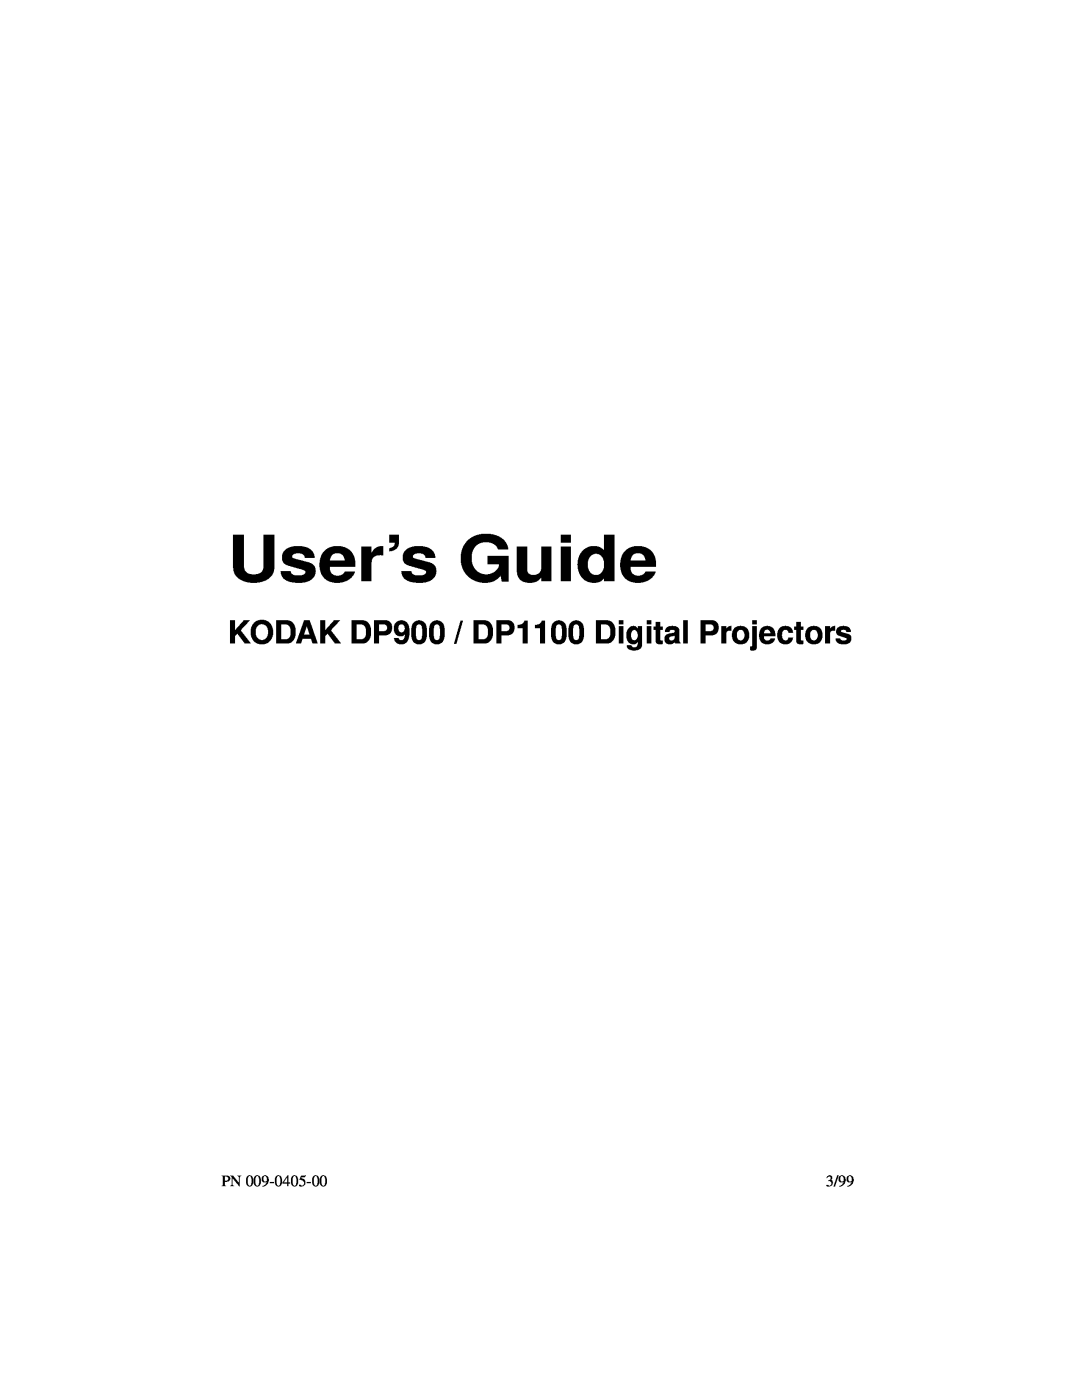 Kodak manual KODAK DP900 / DP1100 Digital Projectors, User’s Guide, 3/99 